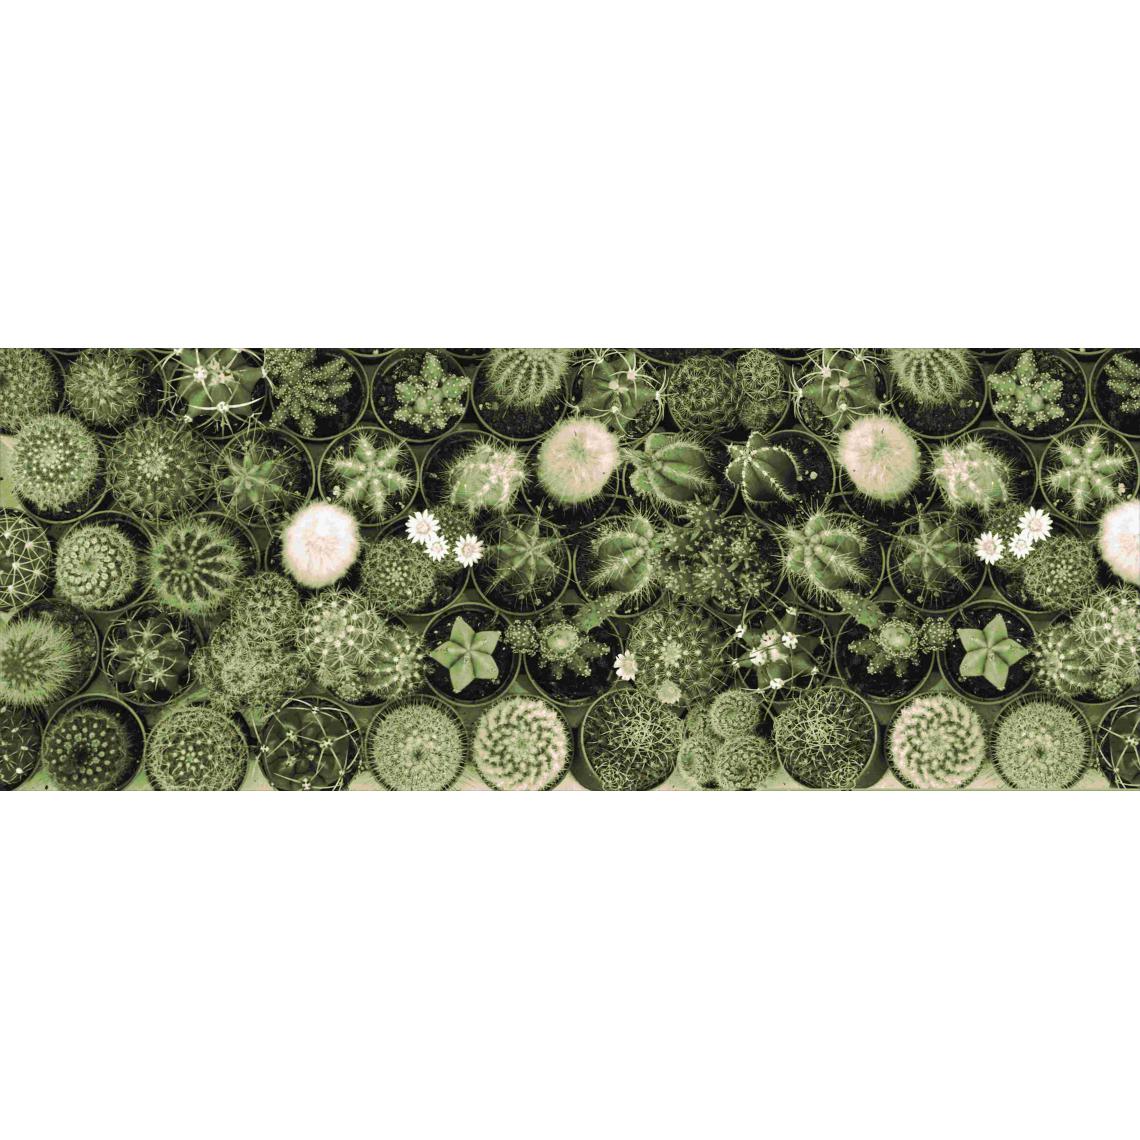 Alter - Chemin de cuisine, 100% Made in Italy, Tapis résistant aux taches avec impression numérique, Tapis antidérapant et lavable, Modèle Cactus - Bodhi, cm 140x52 - Tapis